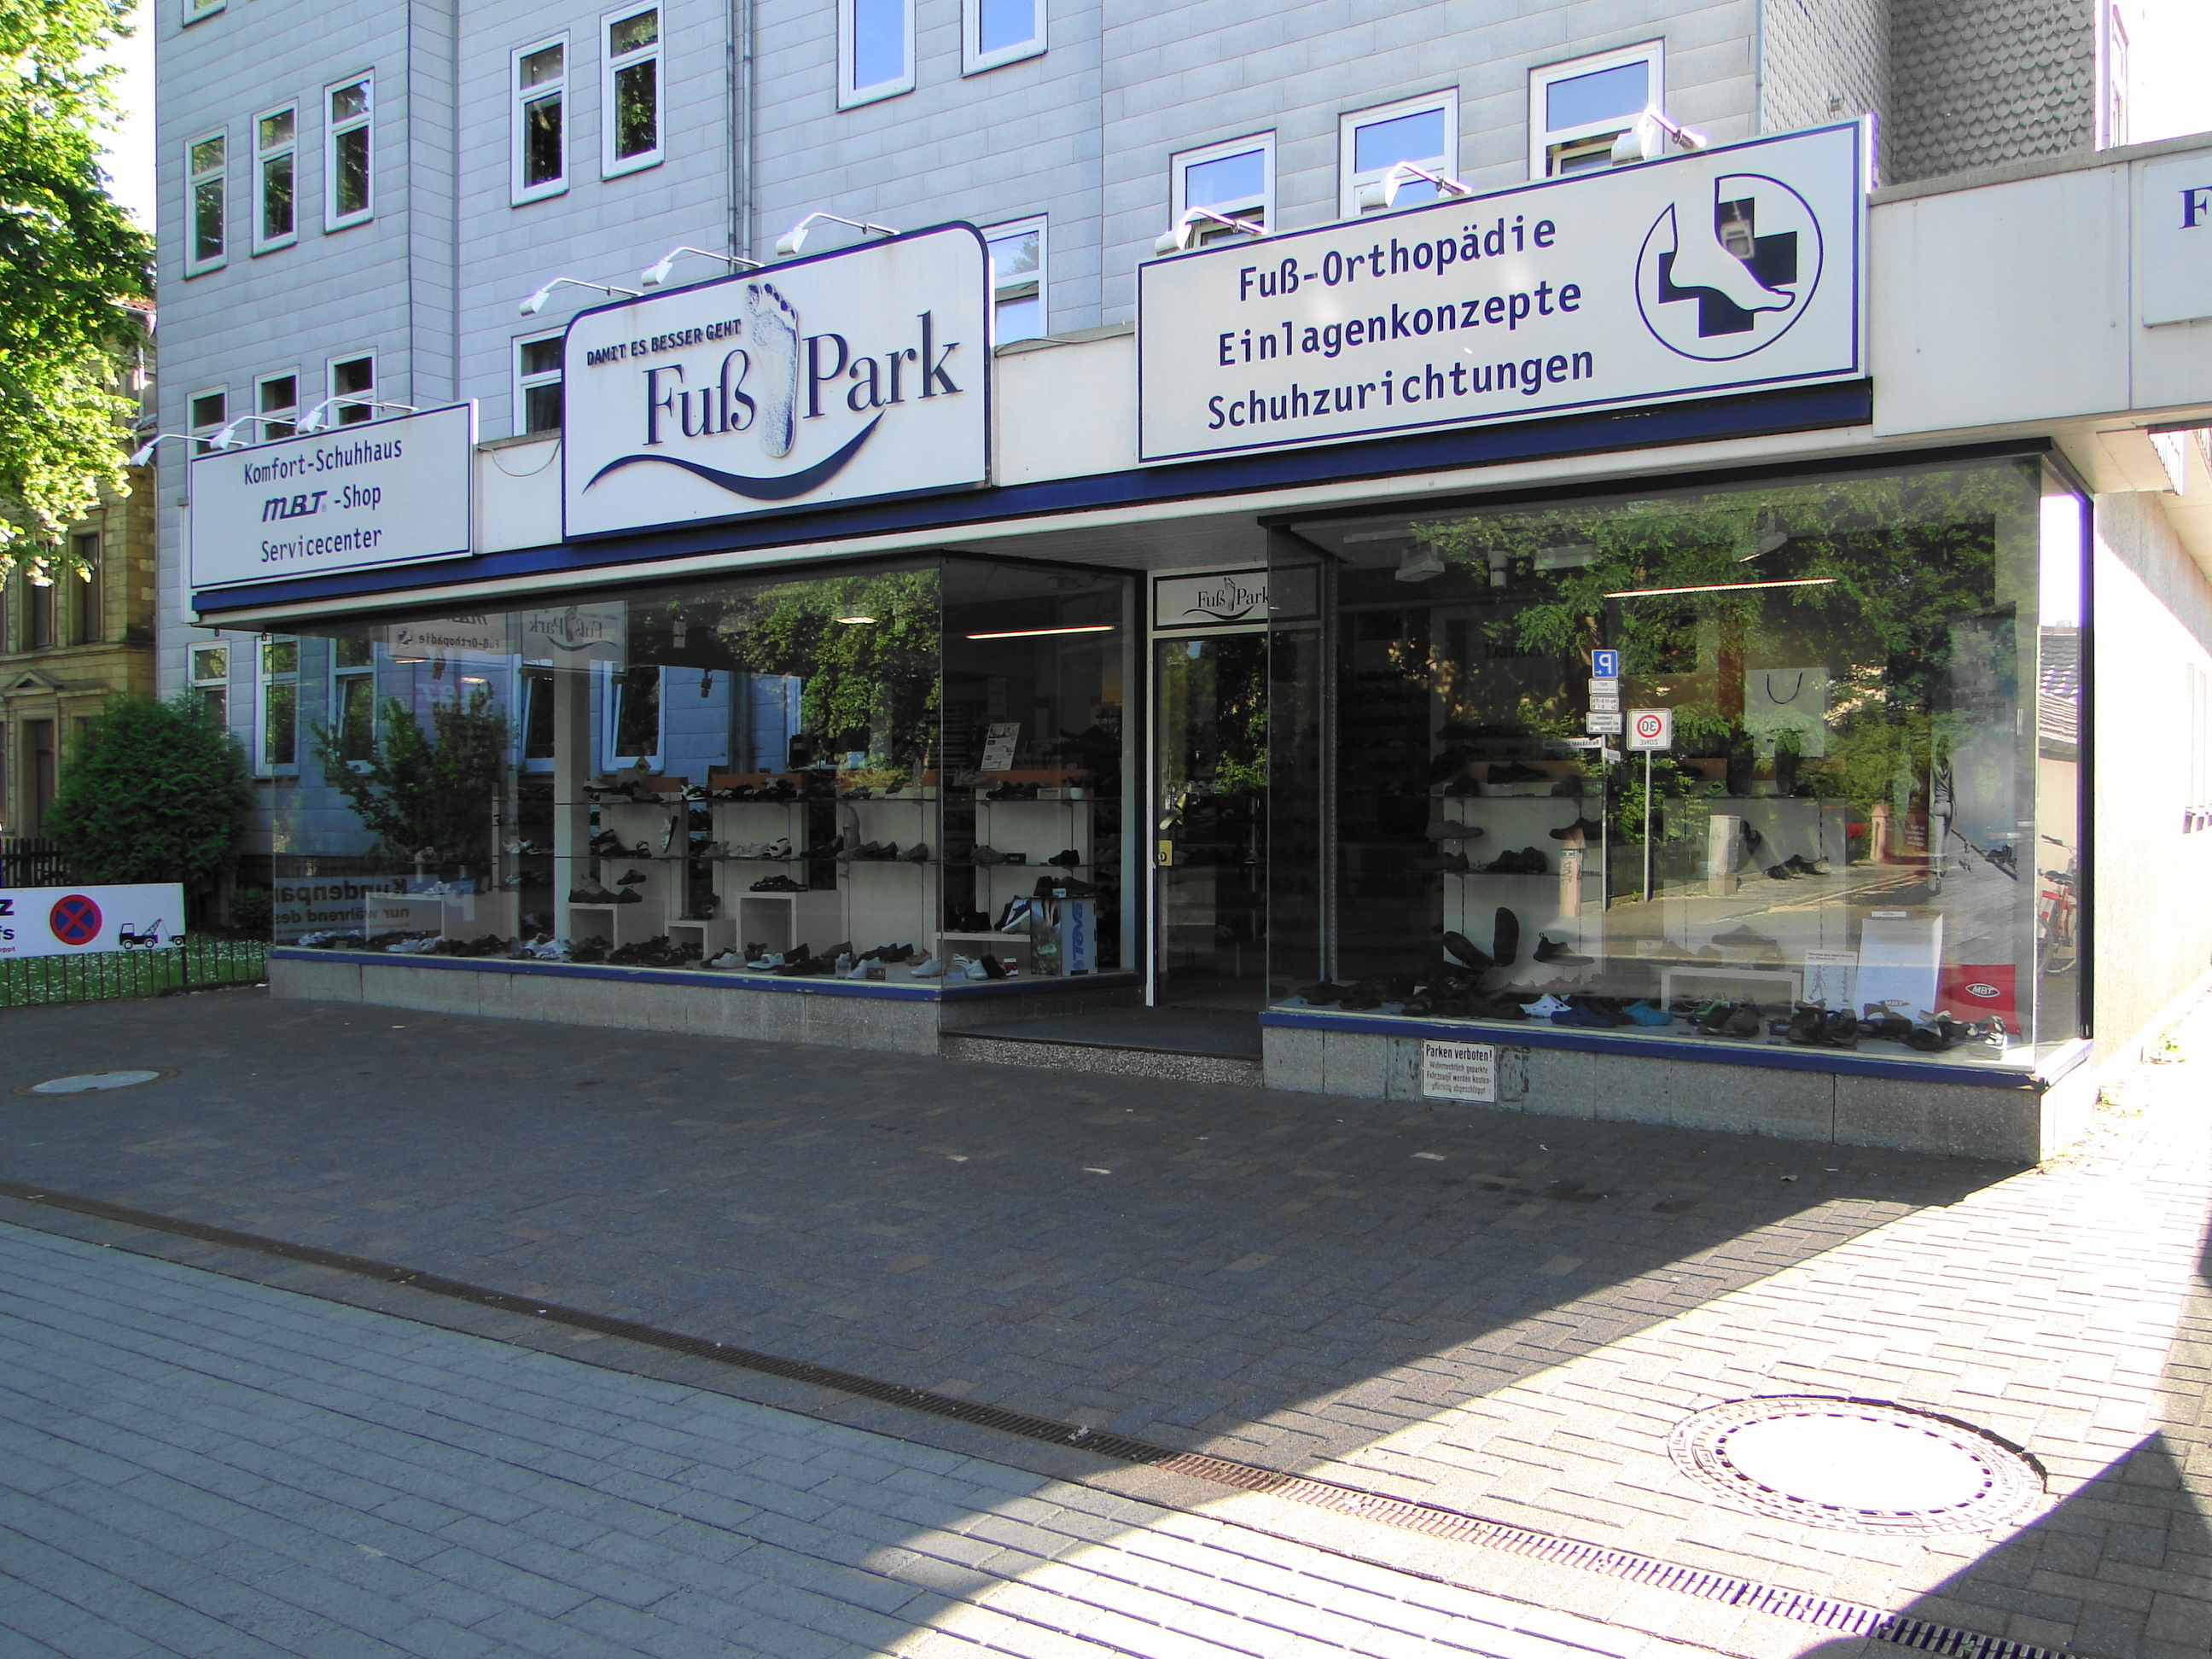 Fuß-Orthopädie Fuß Park in der Reinhäuser Landstr. 24, Fensterfront